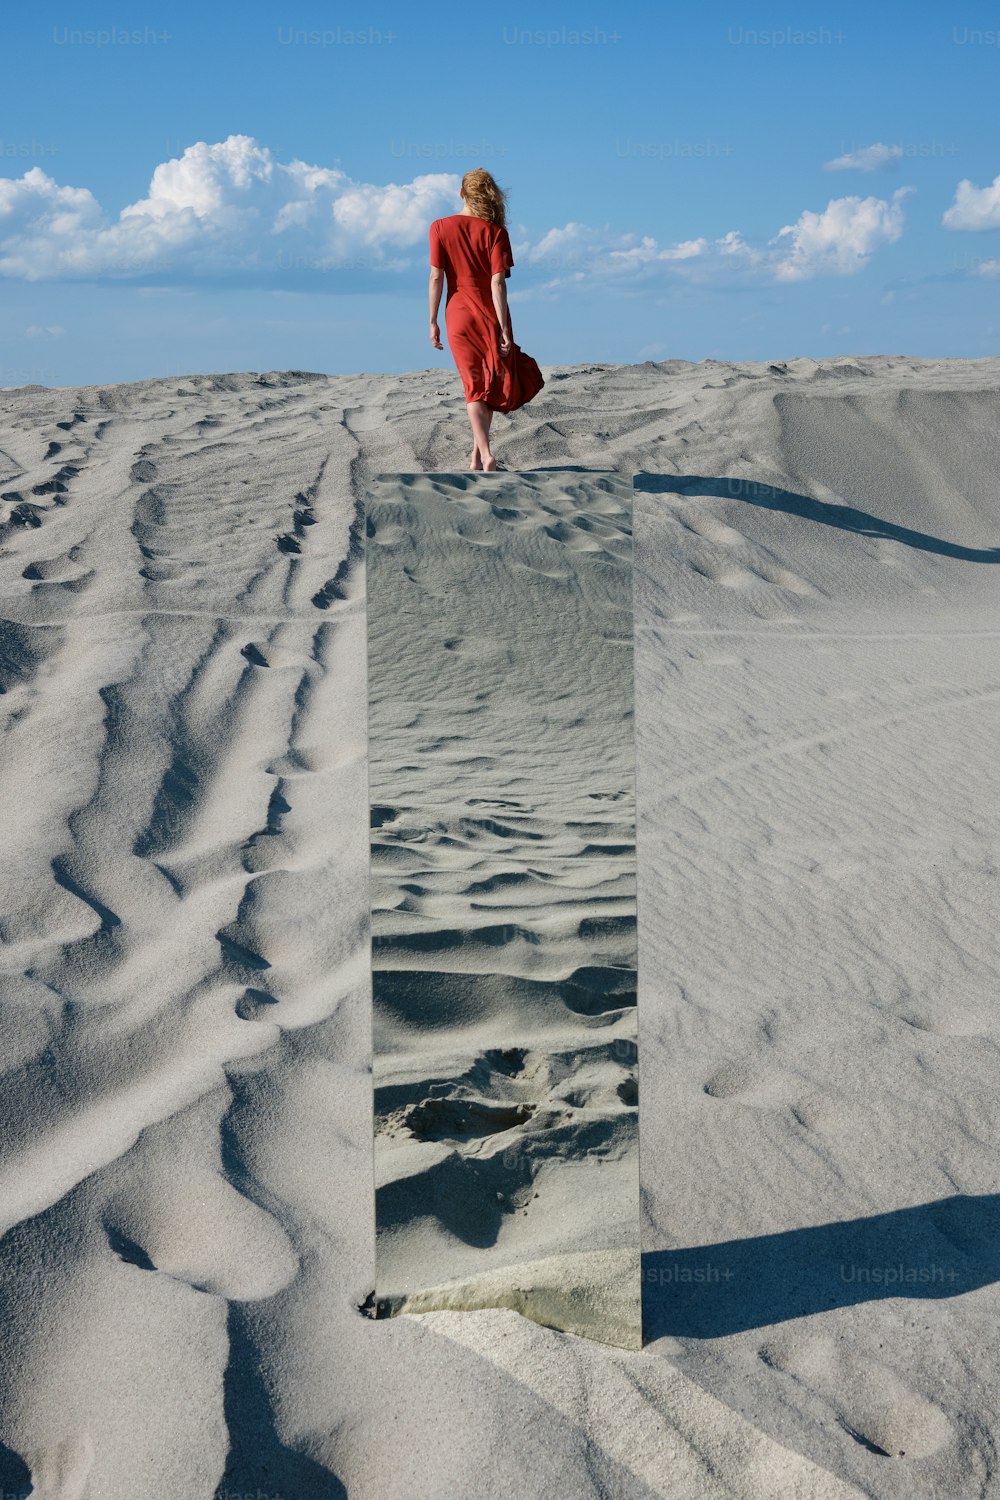 빨간 드레스를 입은 여자가 모래 위를 걷고 있다